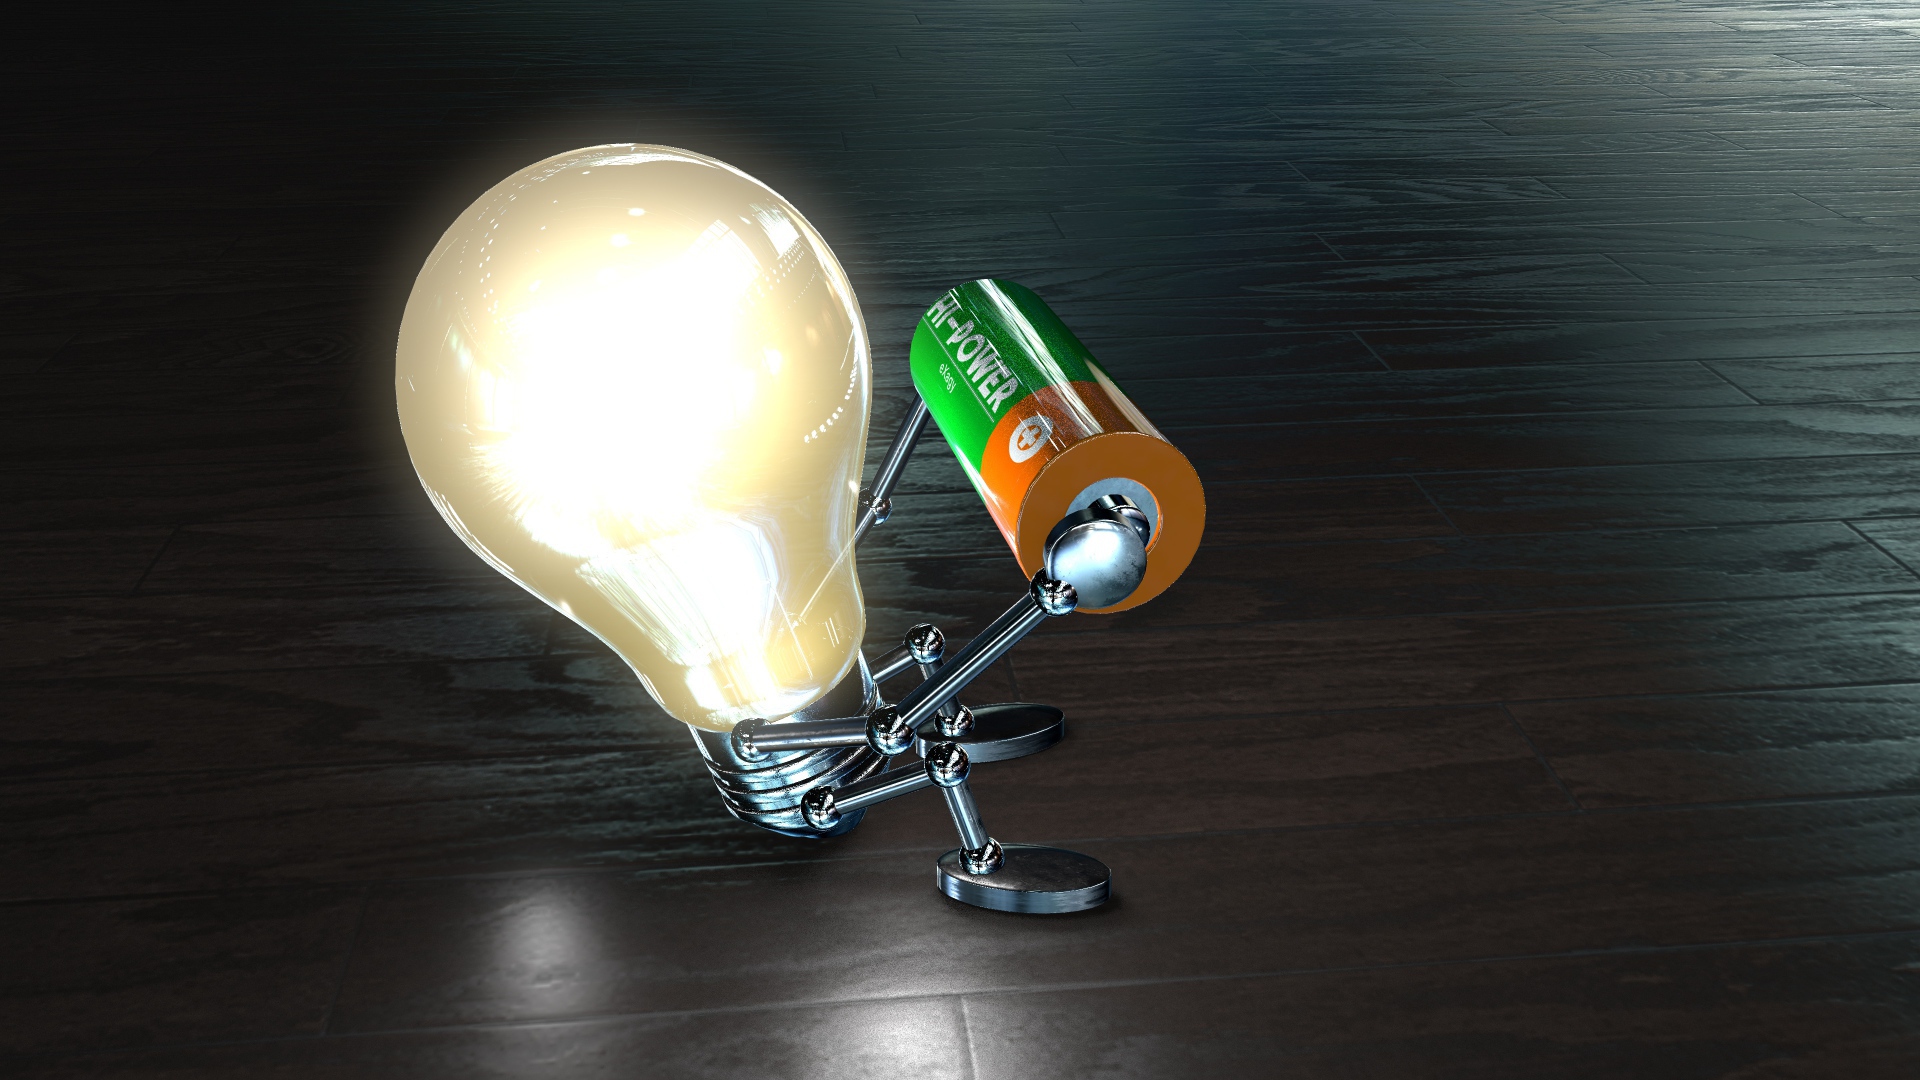 Лампочка с батарейкой в руках на полу